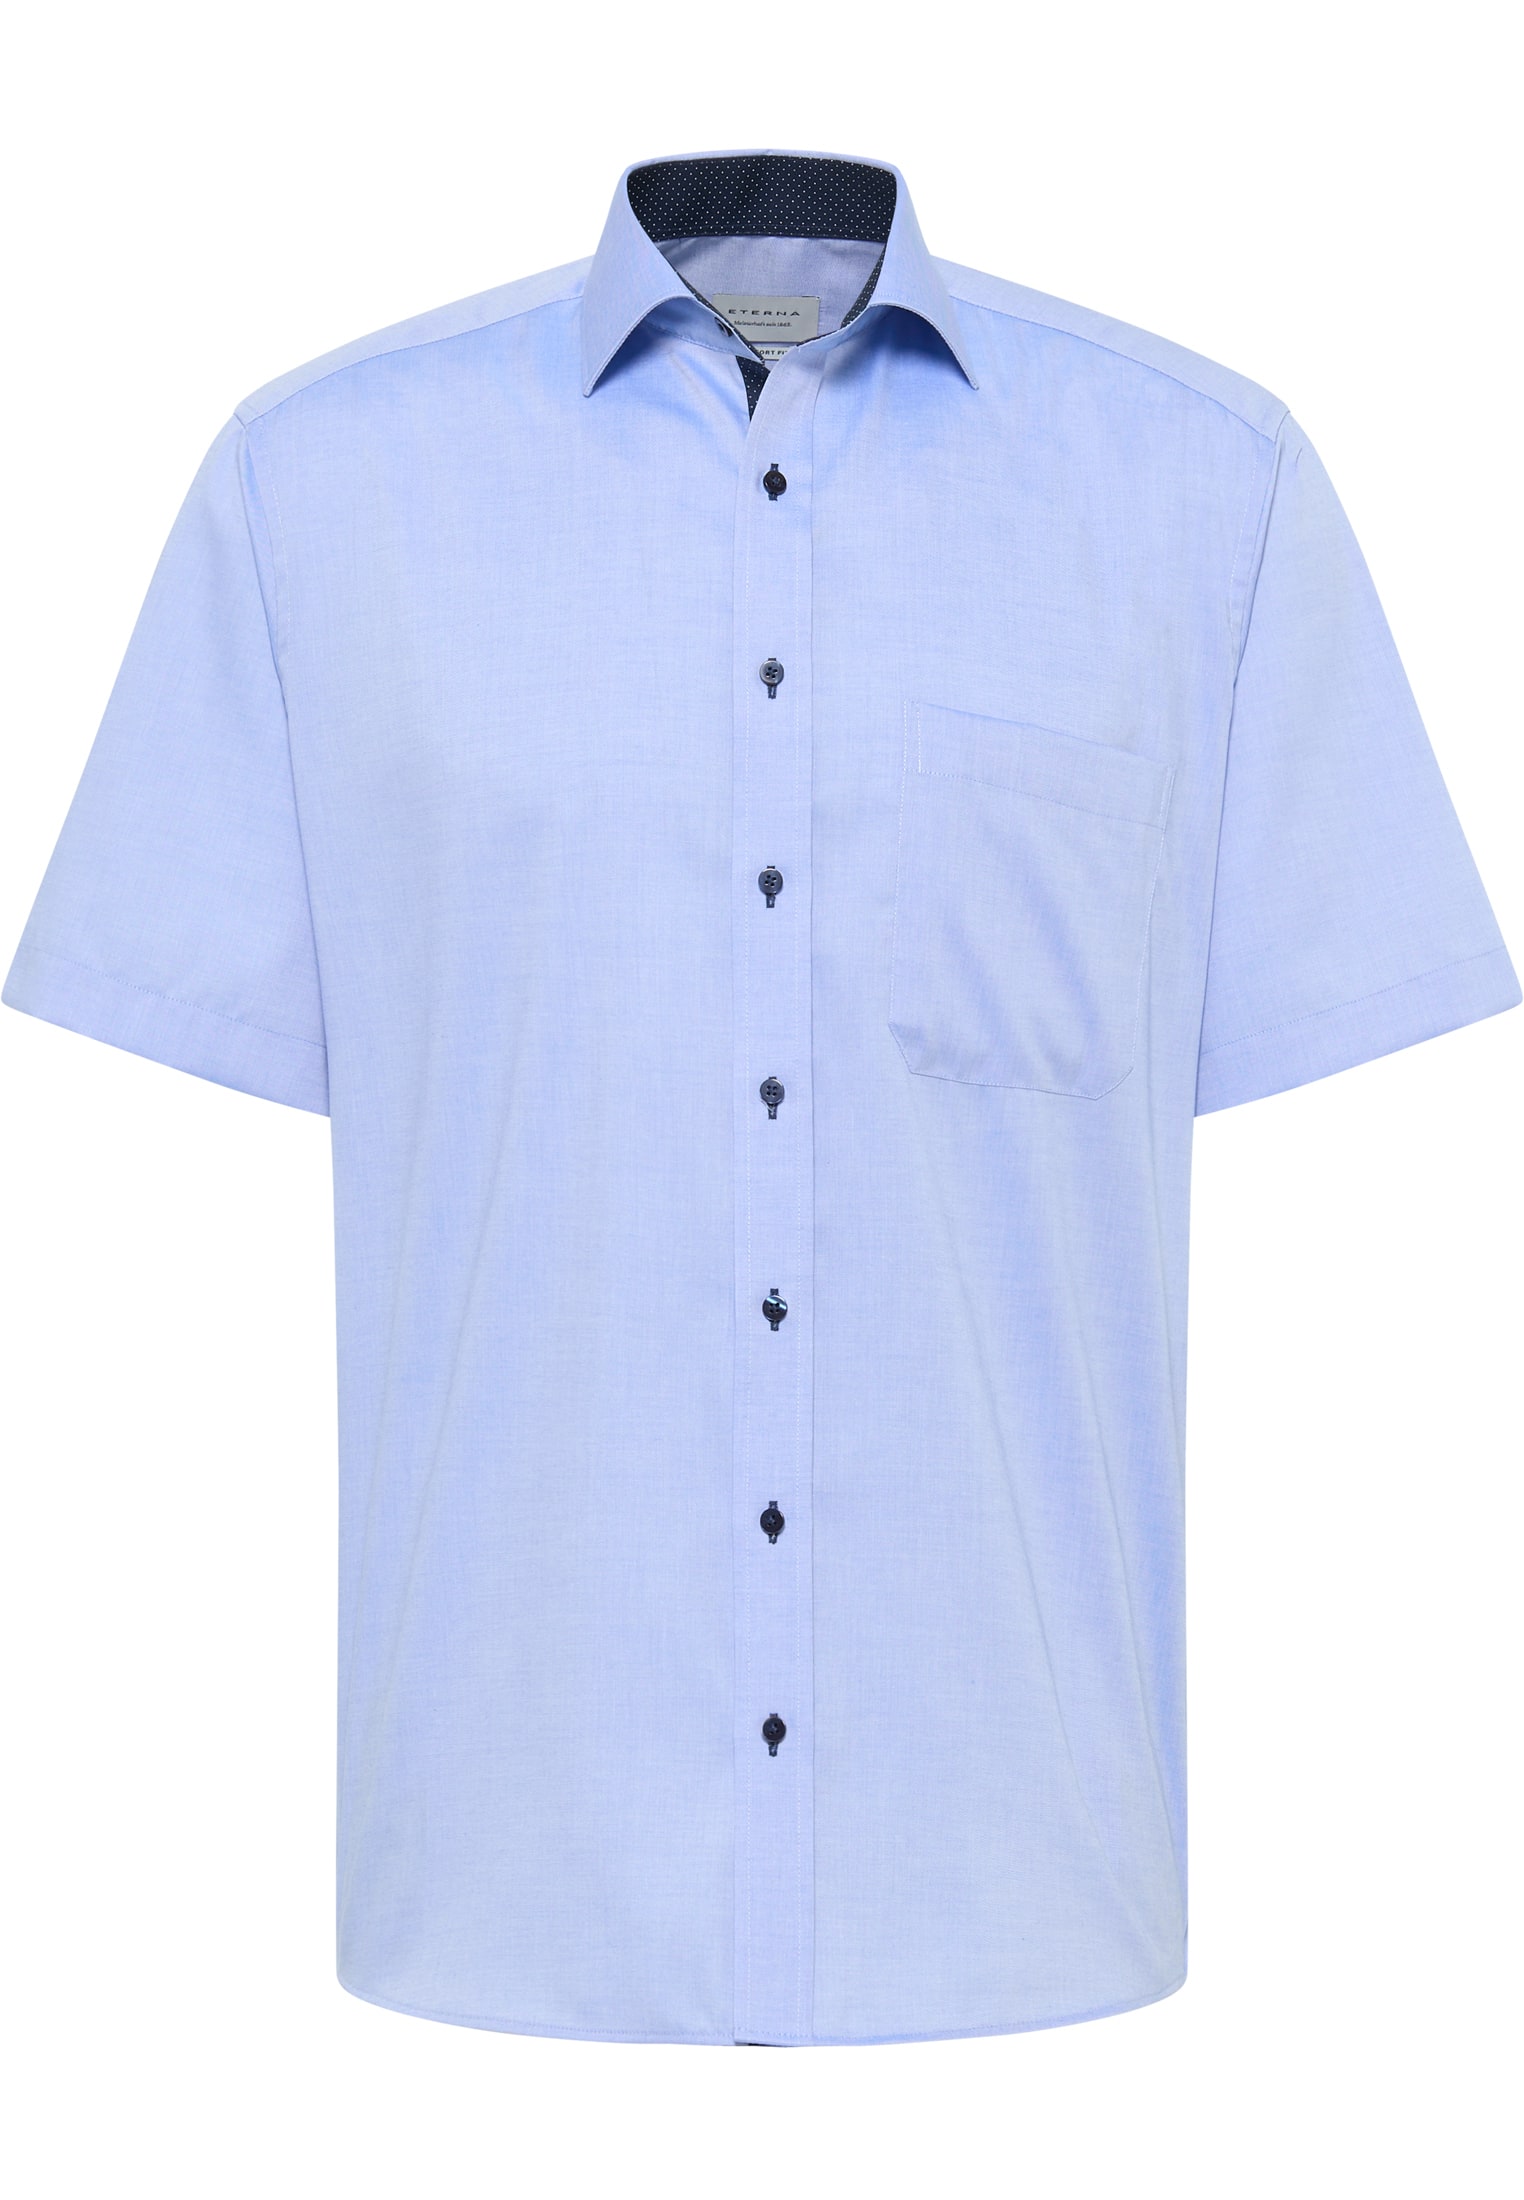 COMFORT FIT | blau 45 Kurzarm | blau in Hemd unifarben | | 1SH11526-01-41-45-1/2